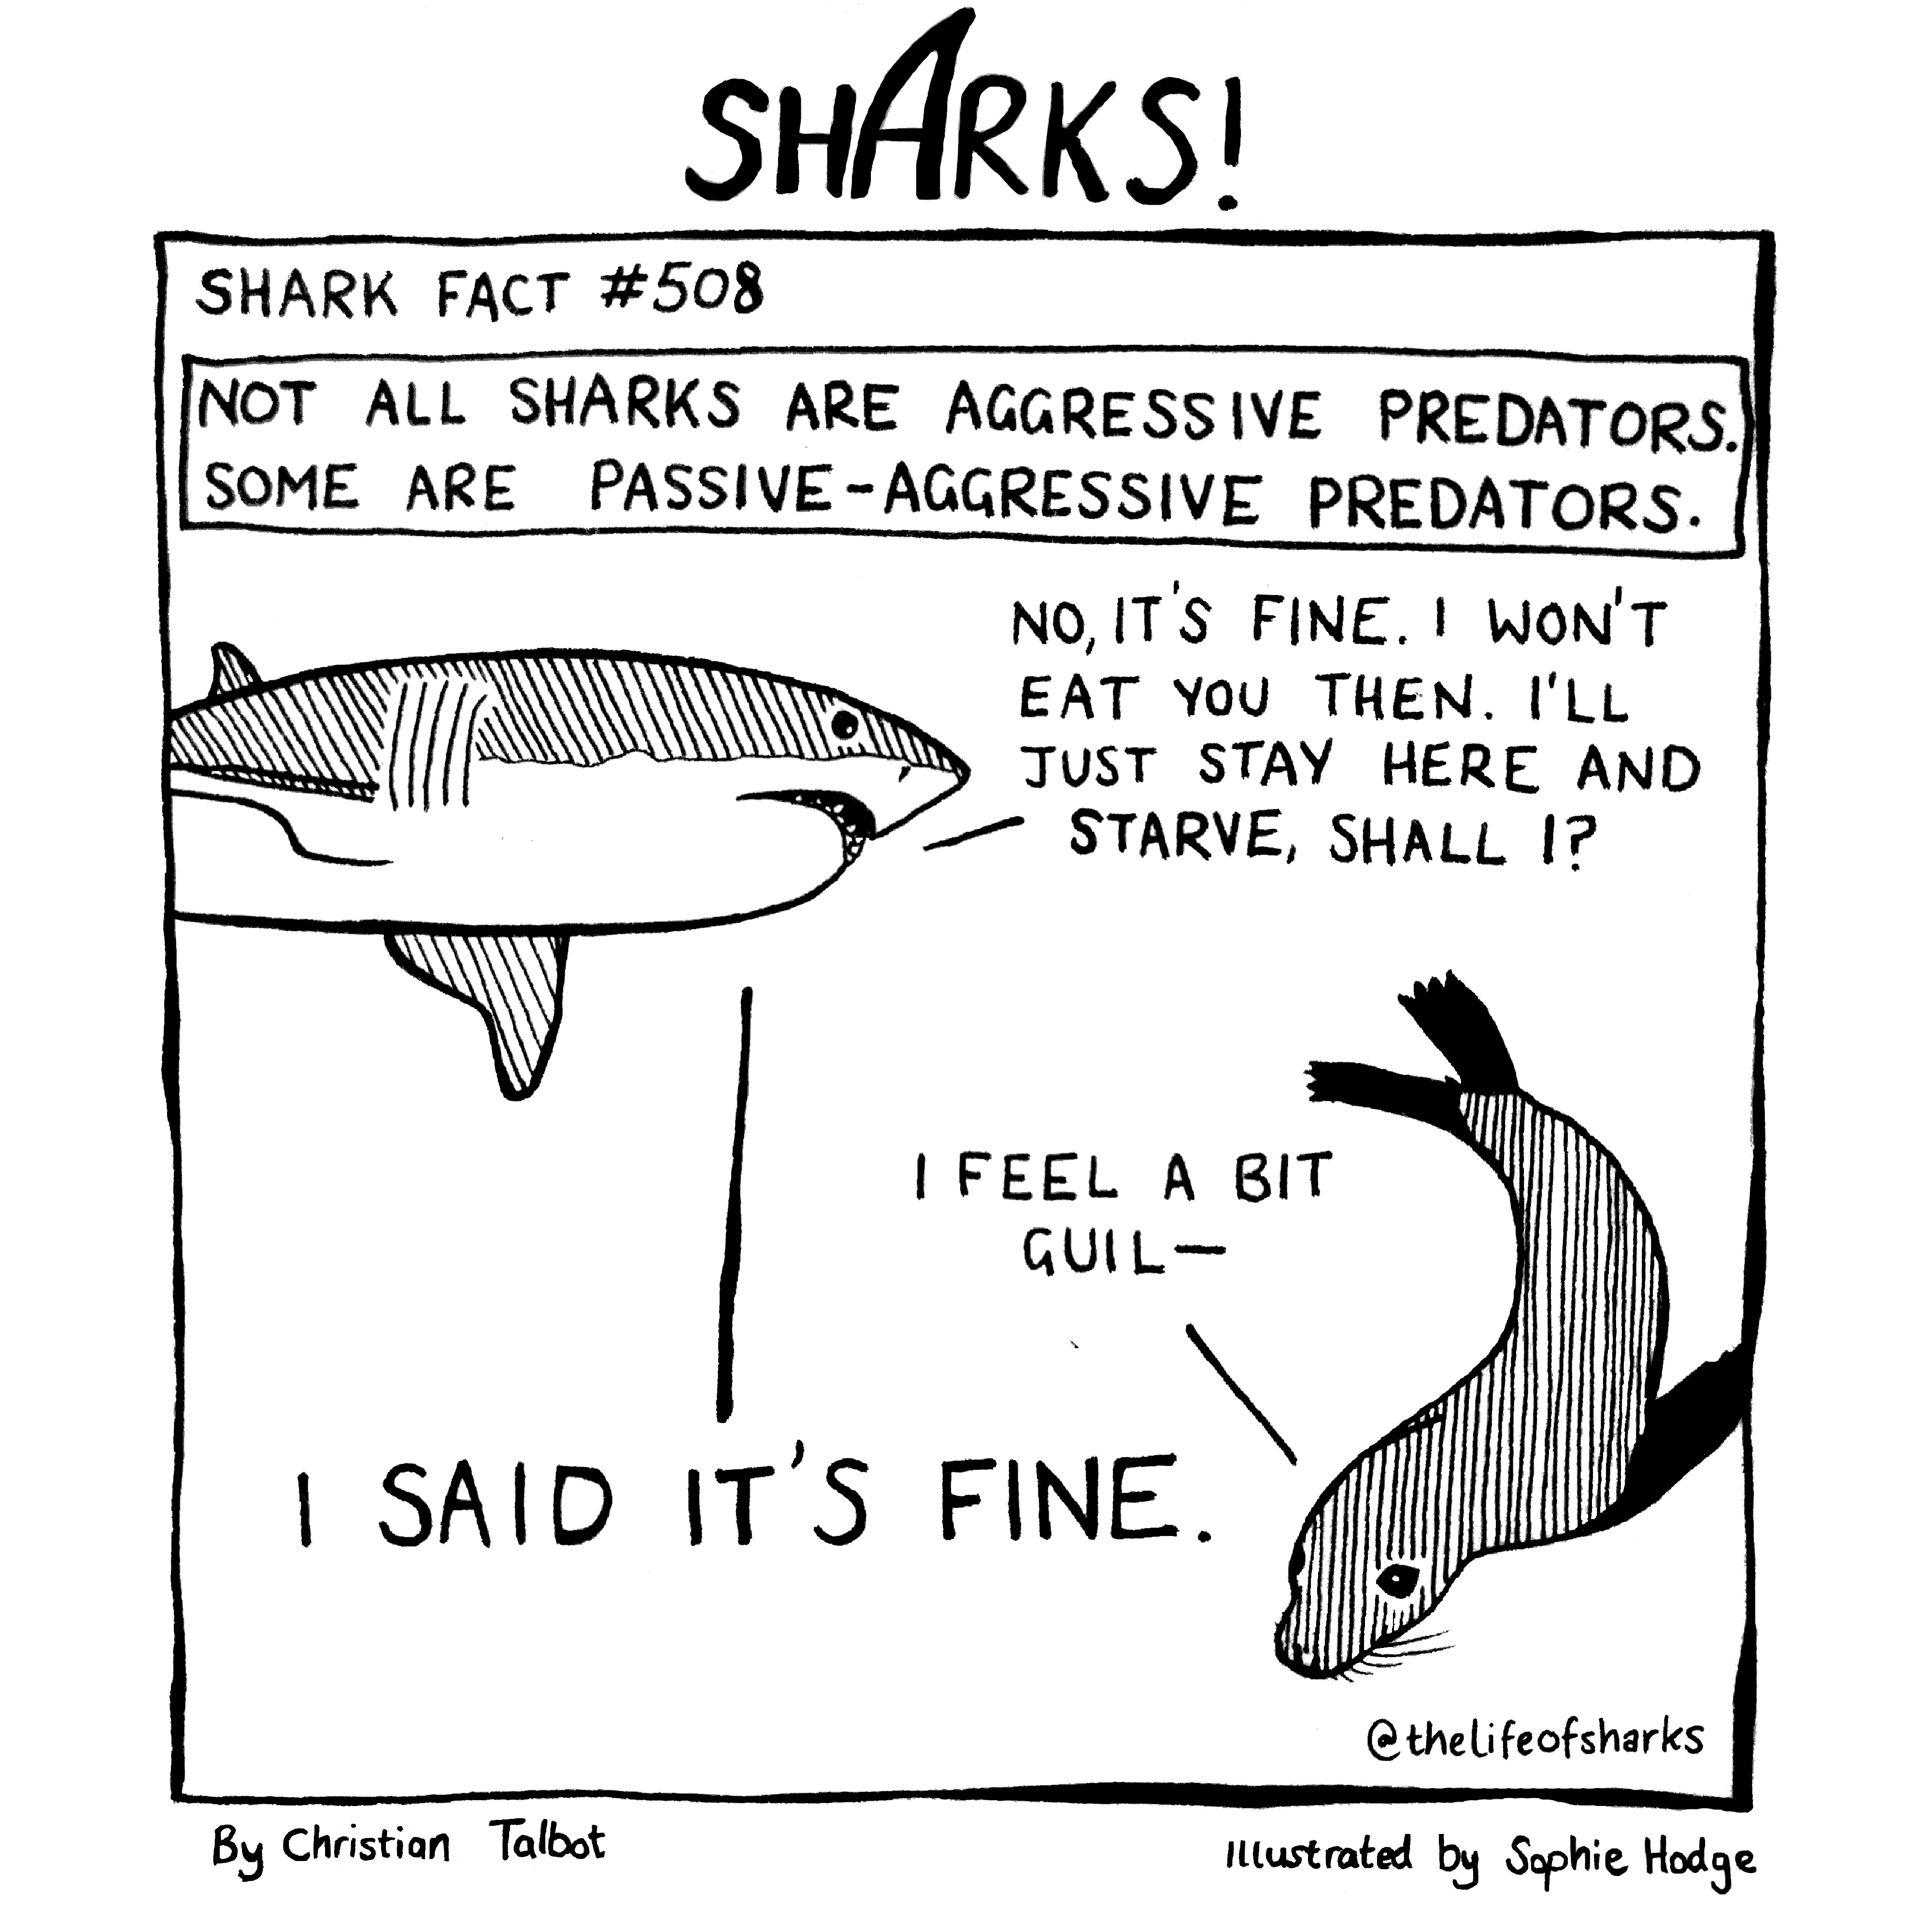 Sharks: It's FINE.